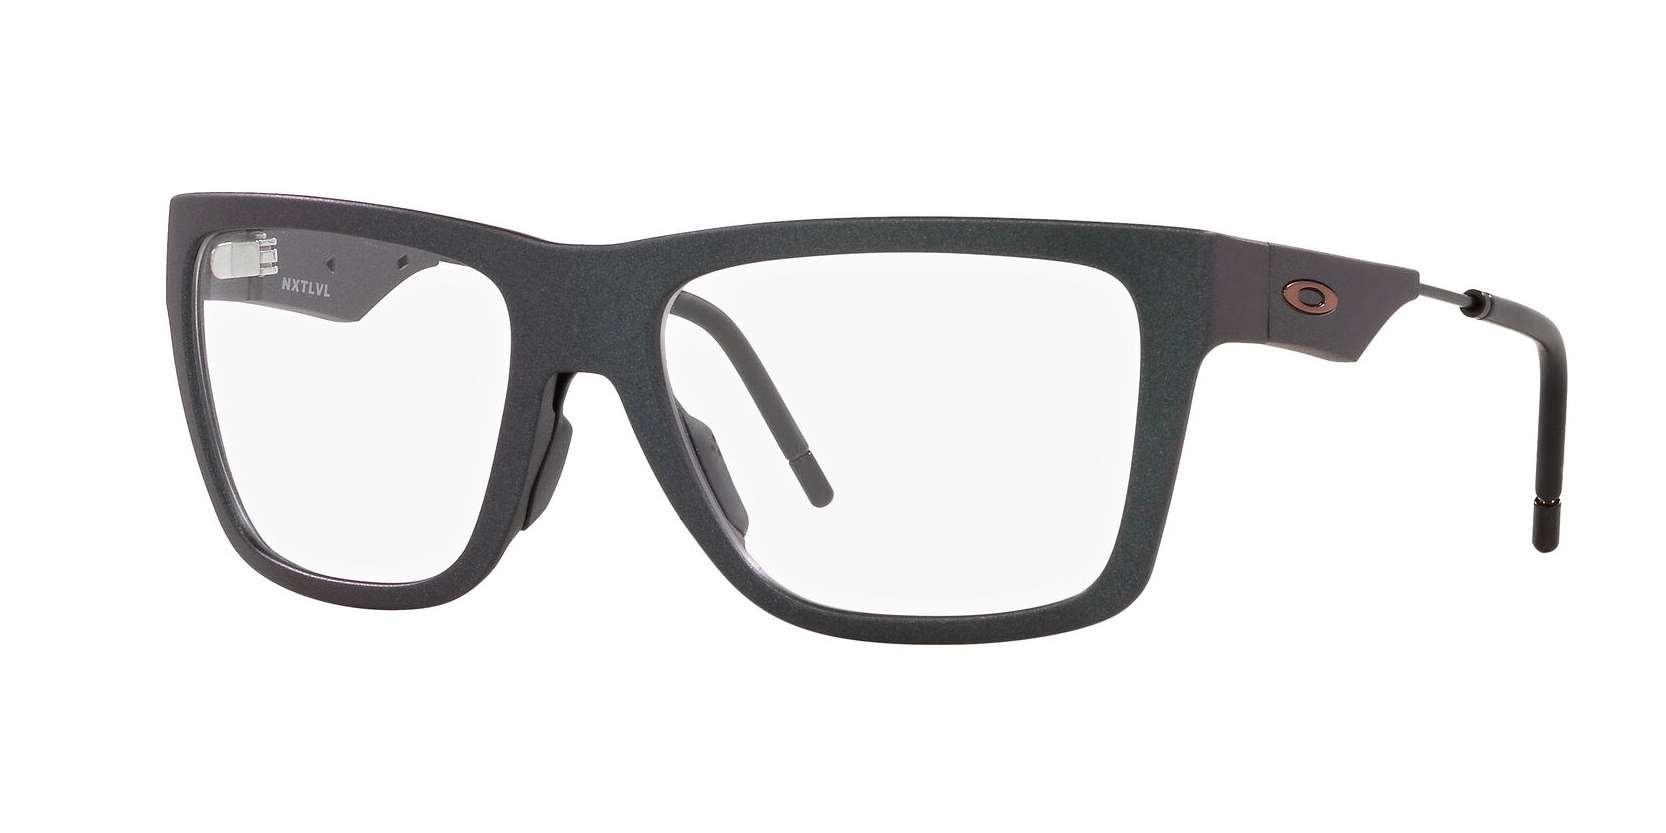 Oakley briller - Nxtlvl fra Oakley - Sølv - Plast - wayfarer - large